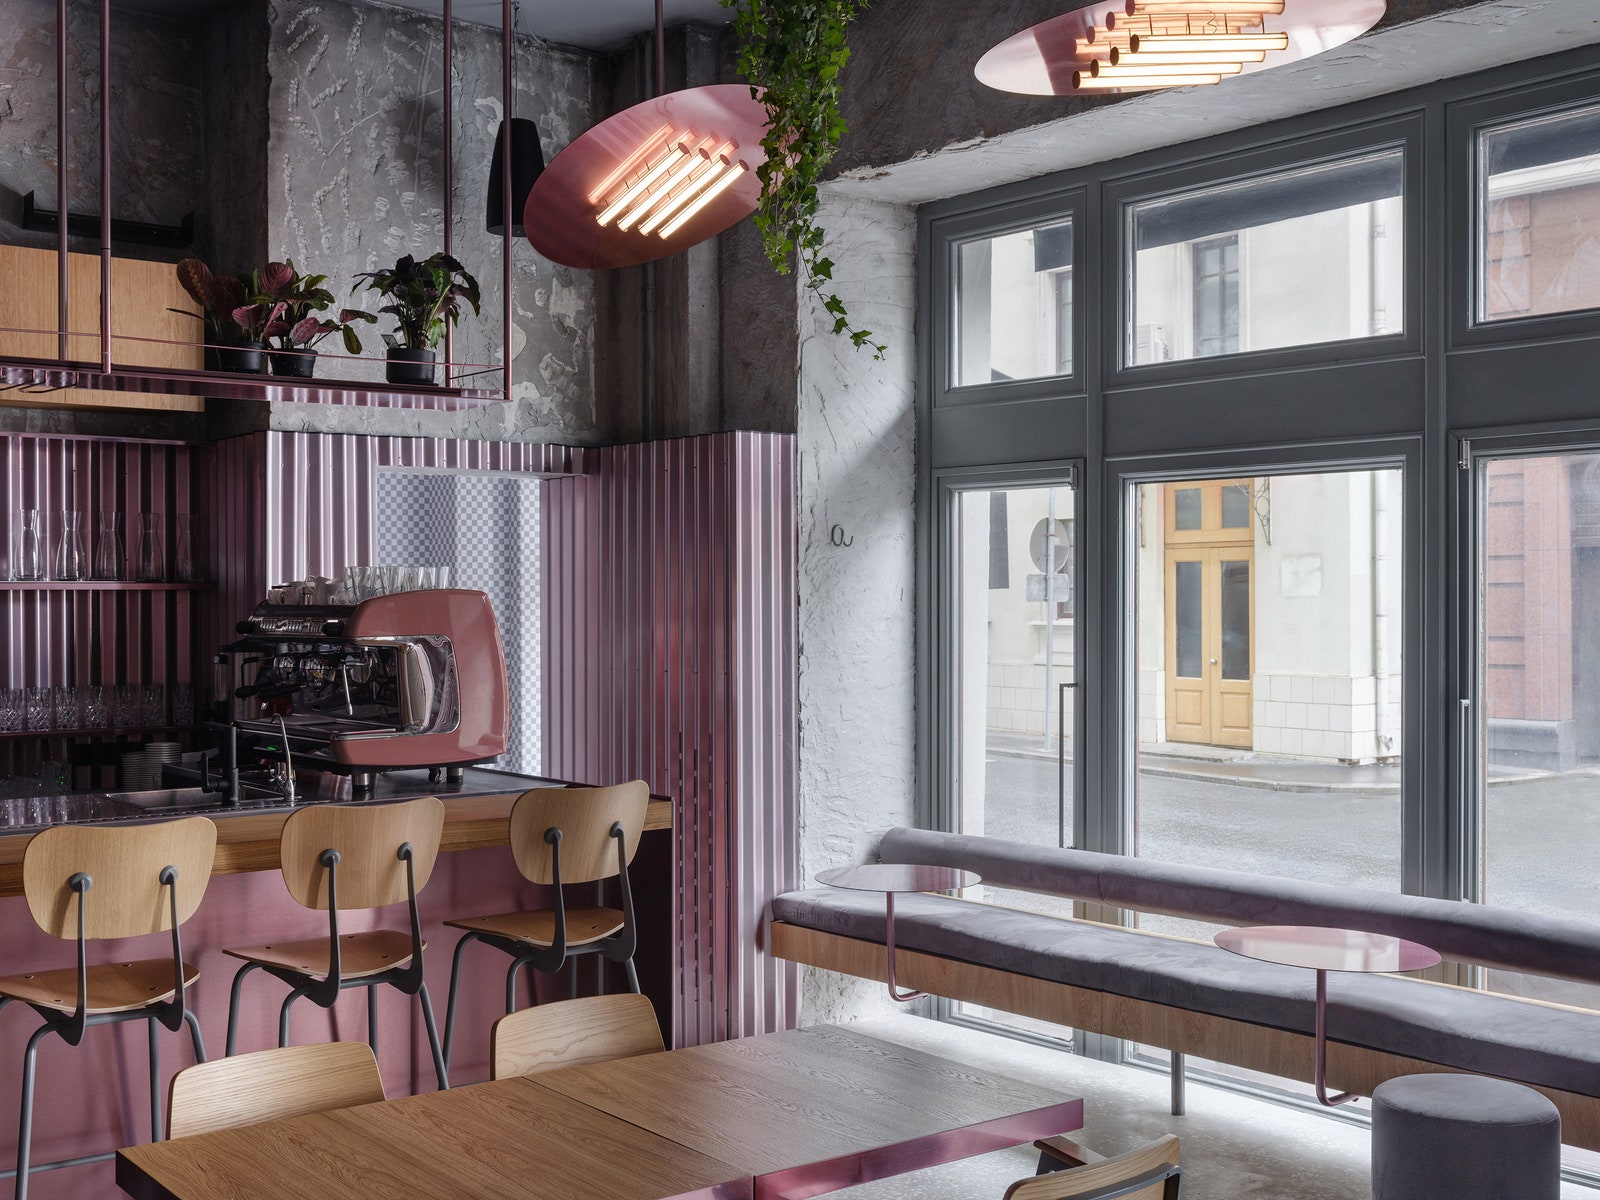 Ресторан Rare Pastrami Bar в Милютинском переулке по проекту Гарри Нуриева